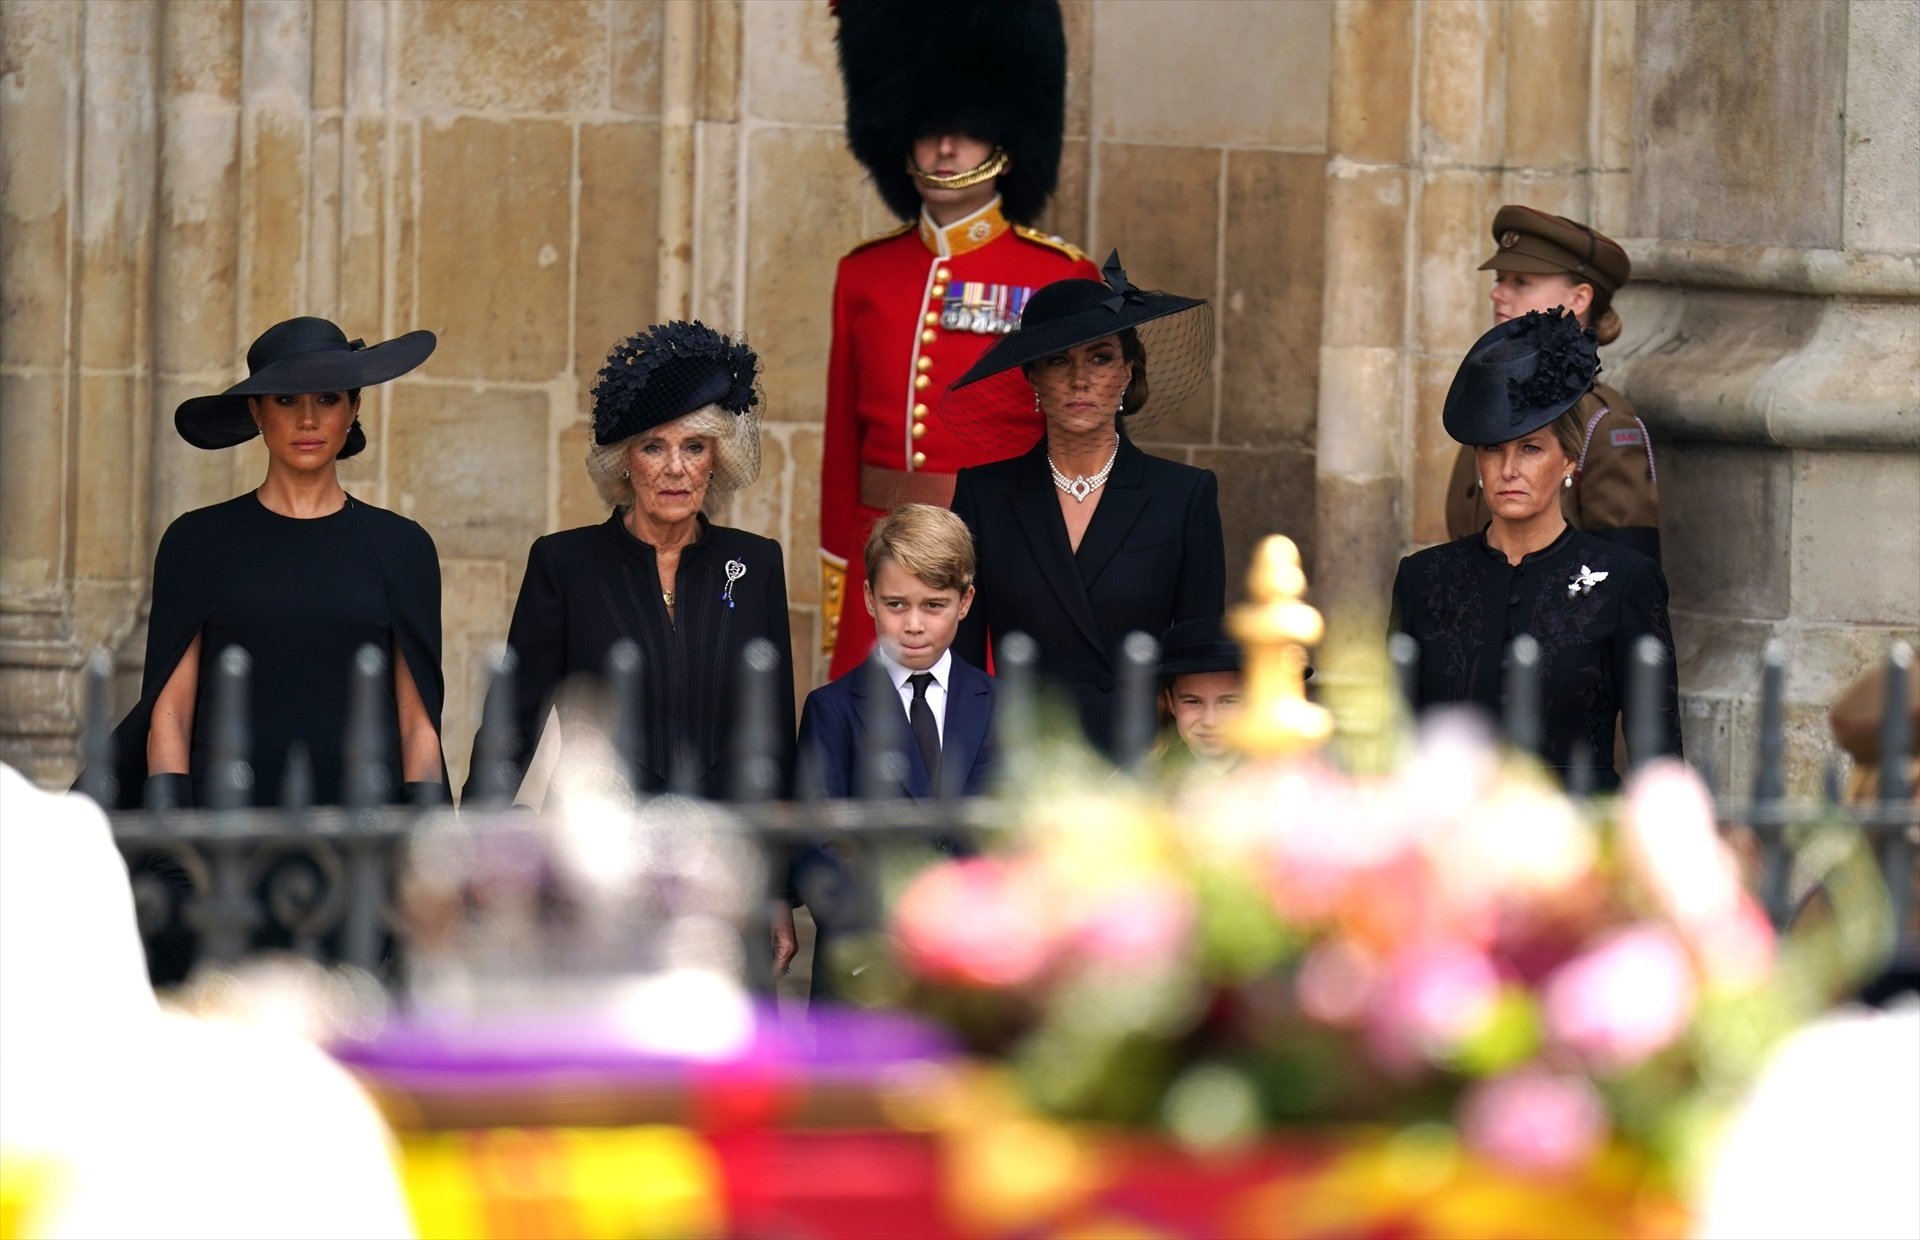 Pànic a les cases reials després del funeral d'Elisabet II: preocupant notícia